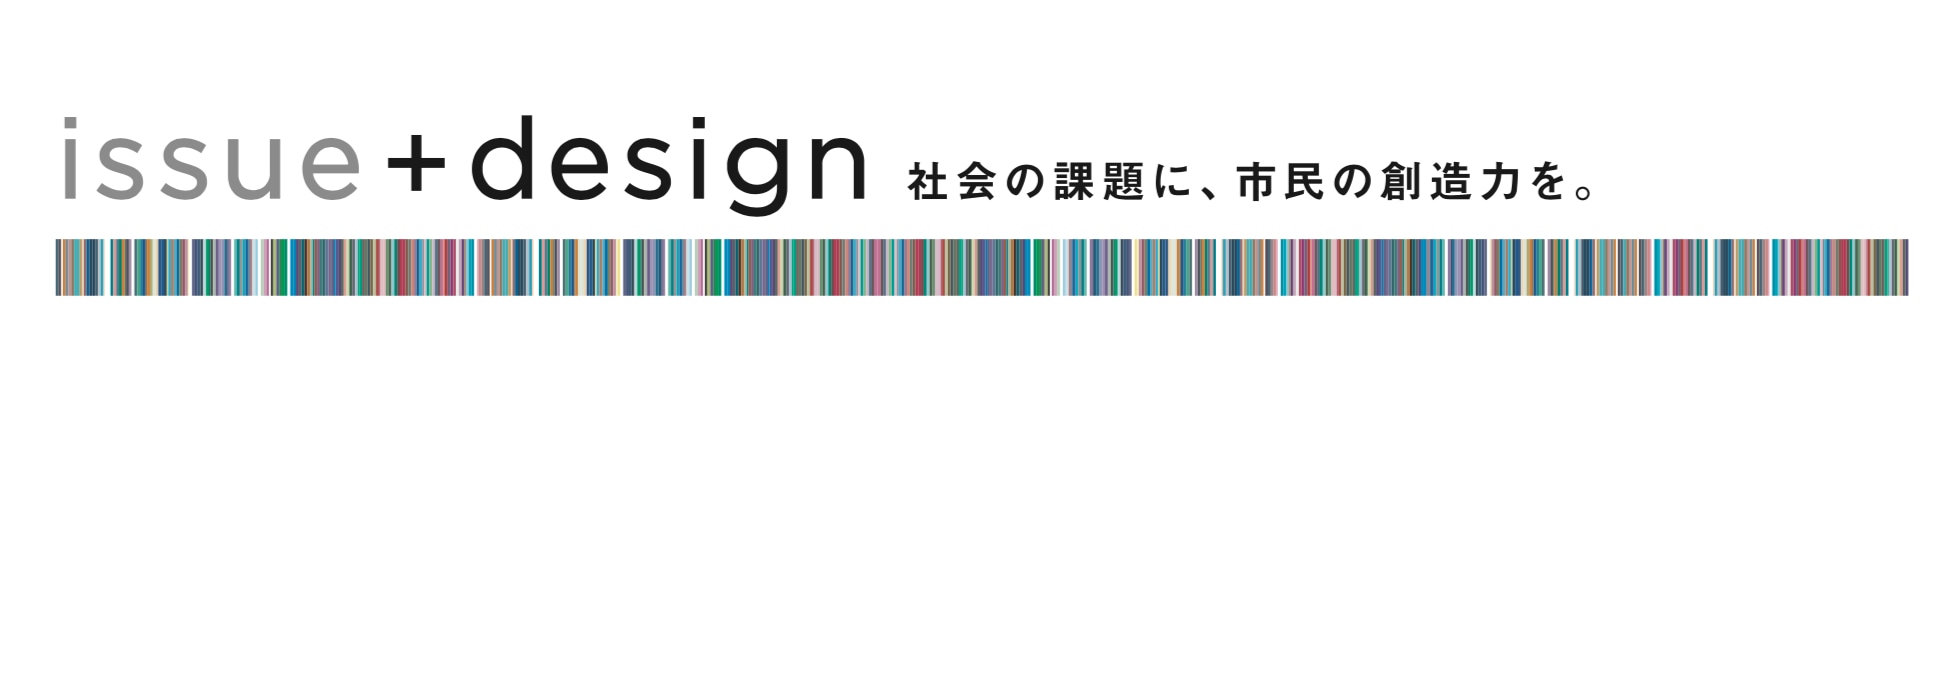 issue+design